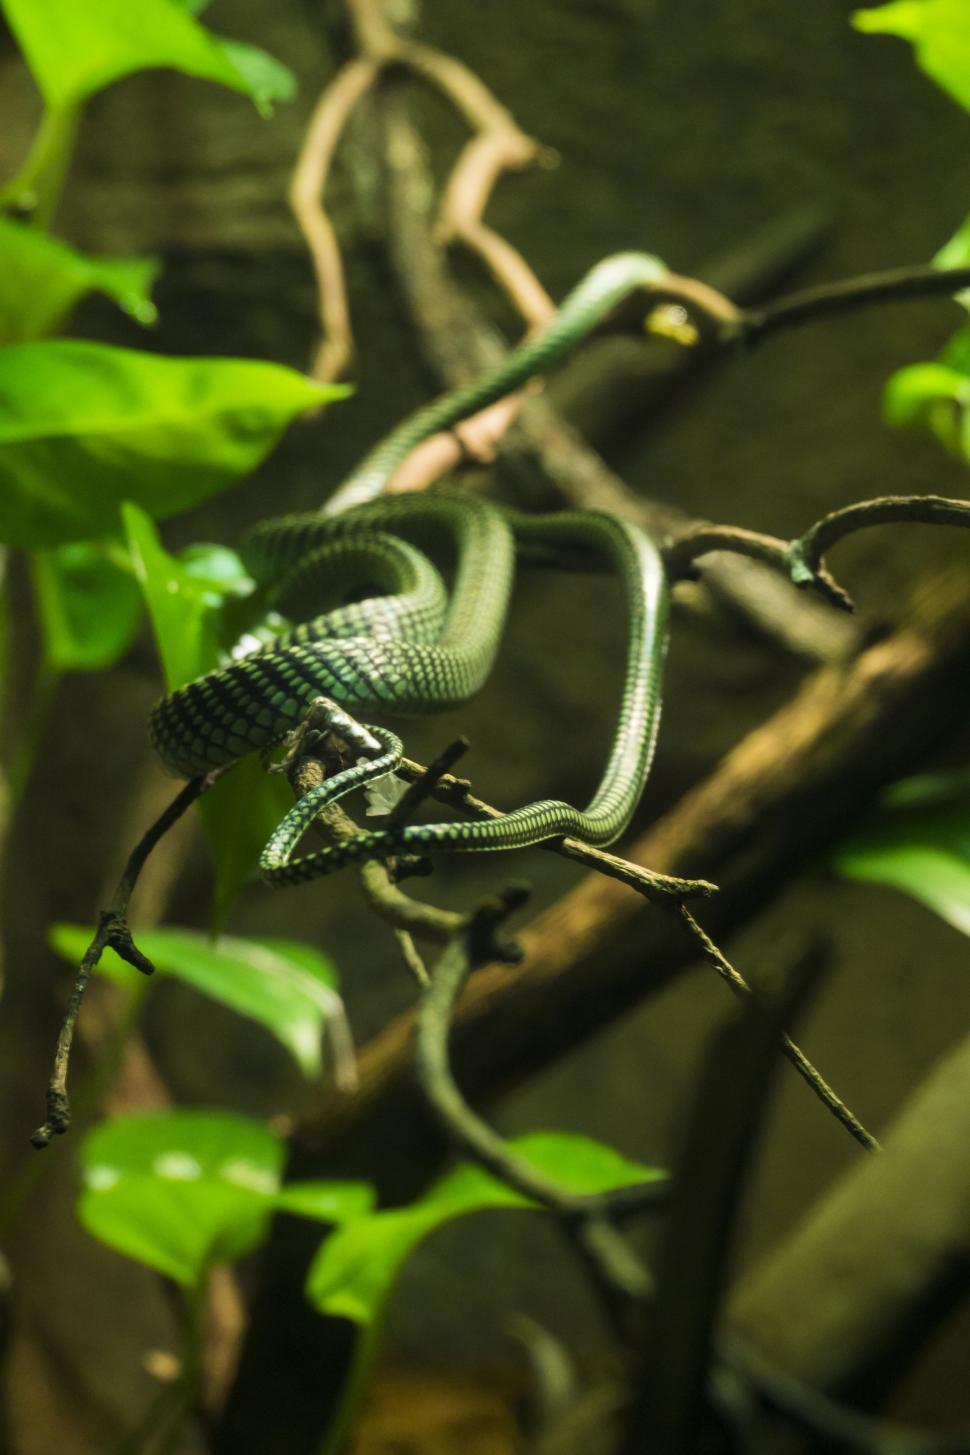 Free Image of Green Snake  